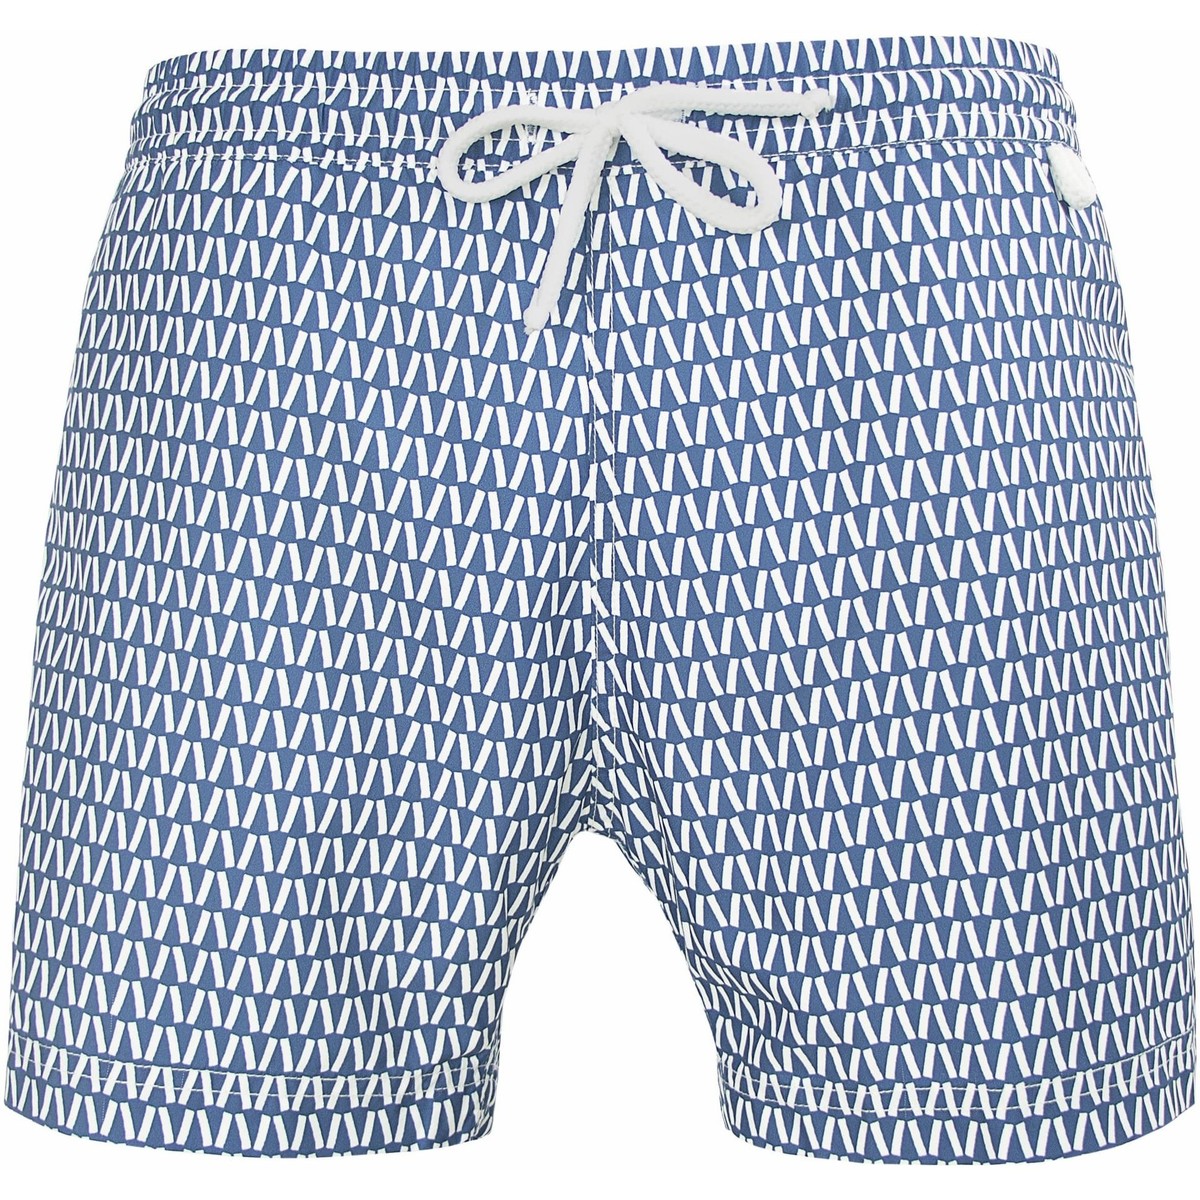 Vêtements Homme Maillots / Shorts de bain Ajouter au panier Montauk 805 Optiv bleu - Maillot Short de bain homme Bleu